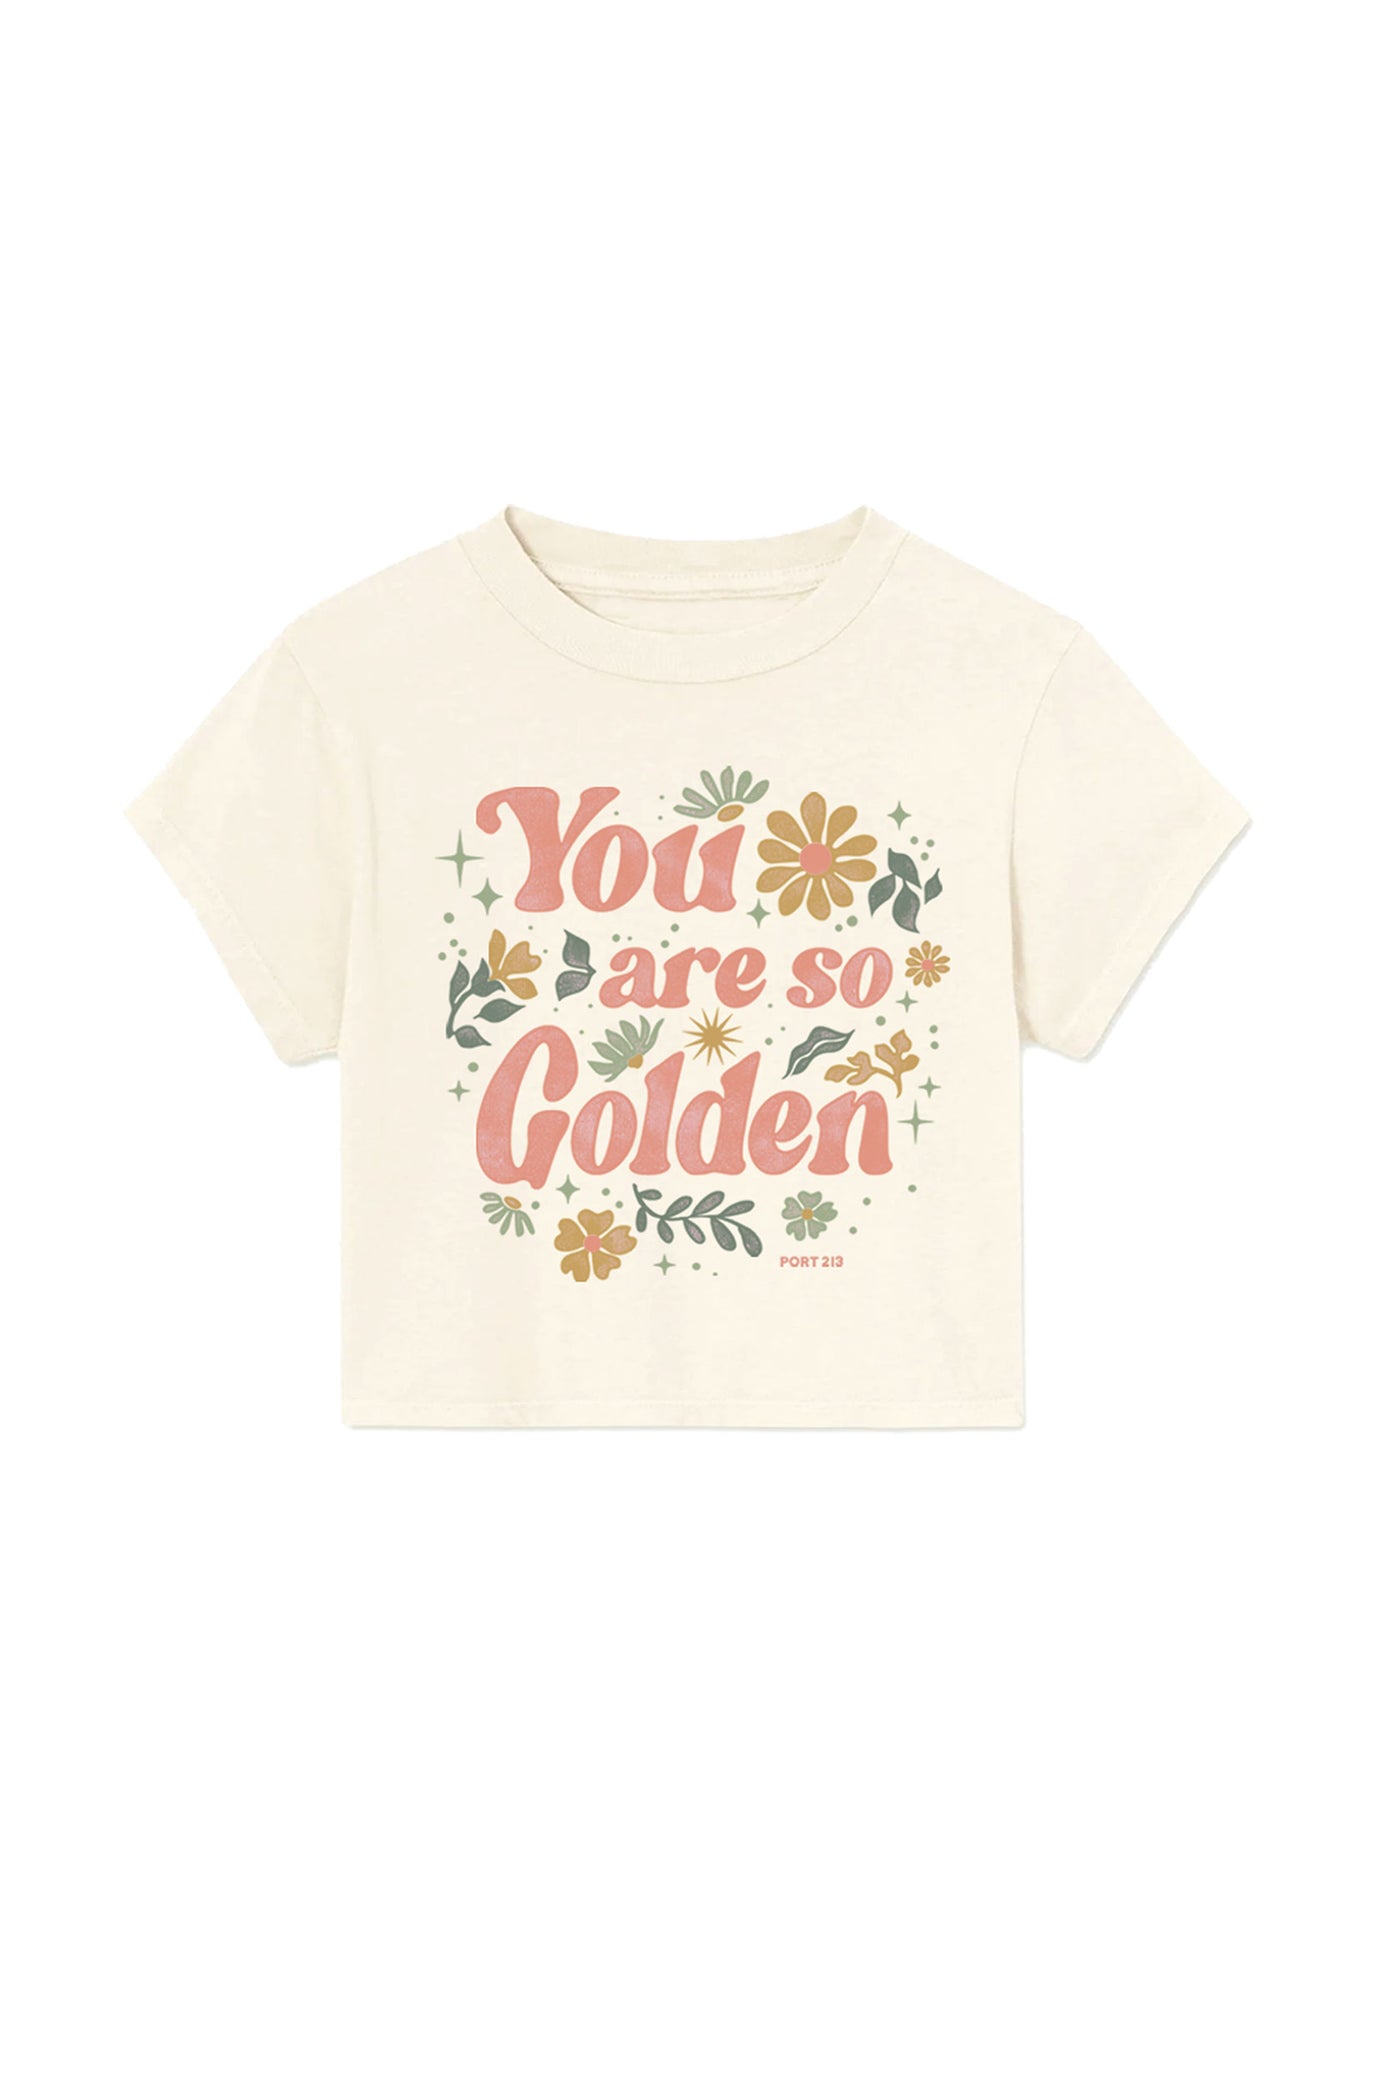 Kid's Golden Crop T-shirt, Girls